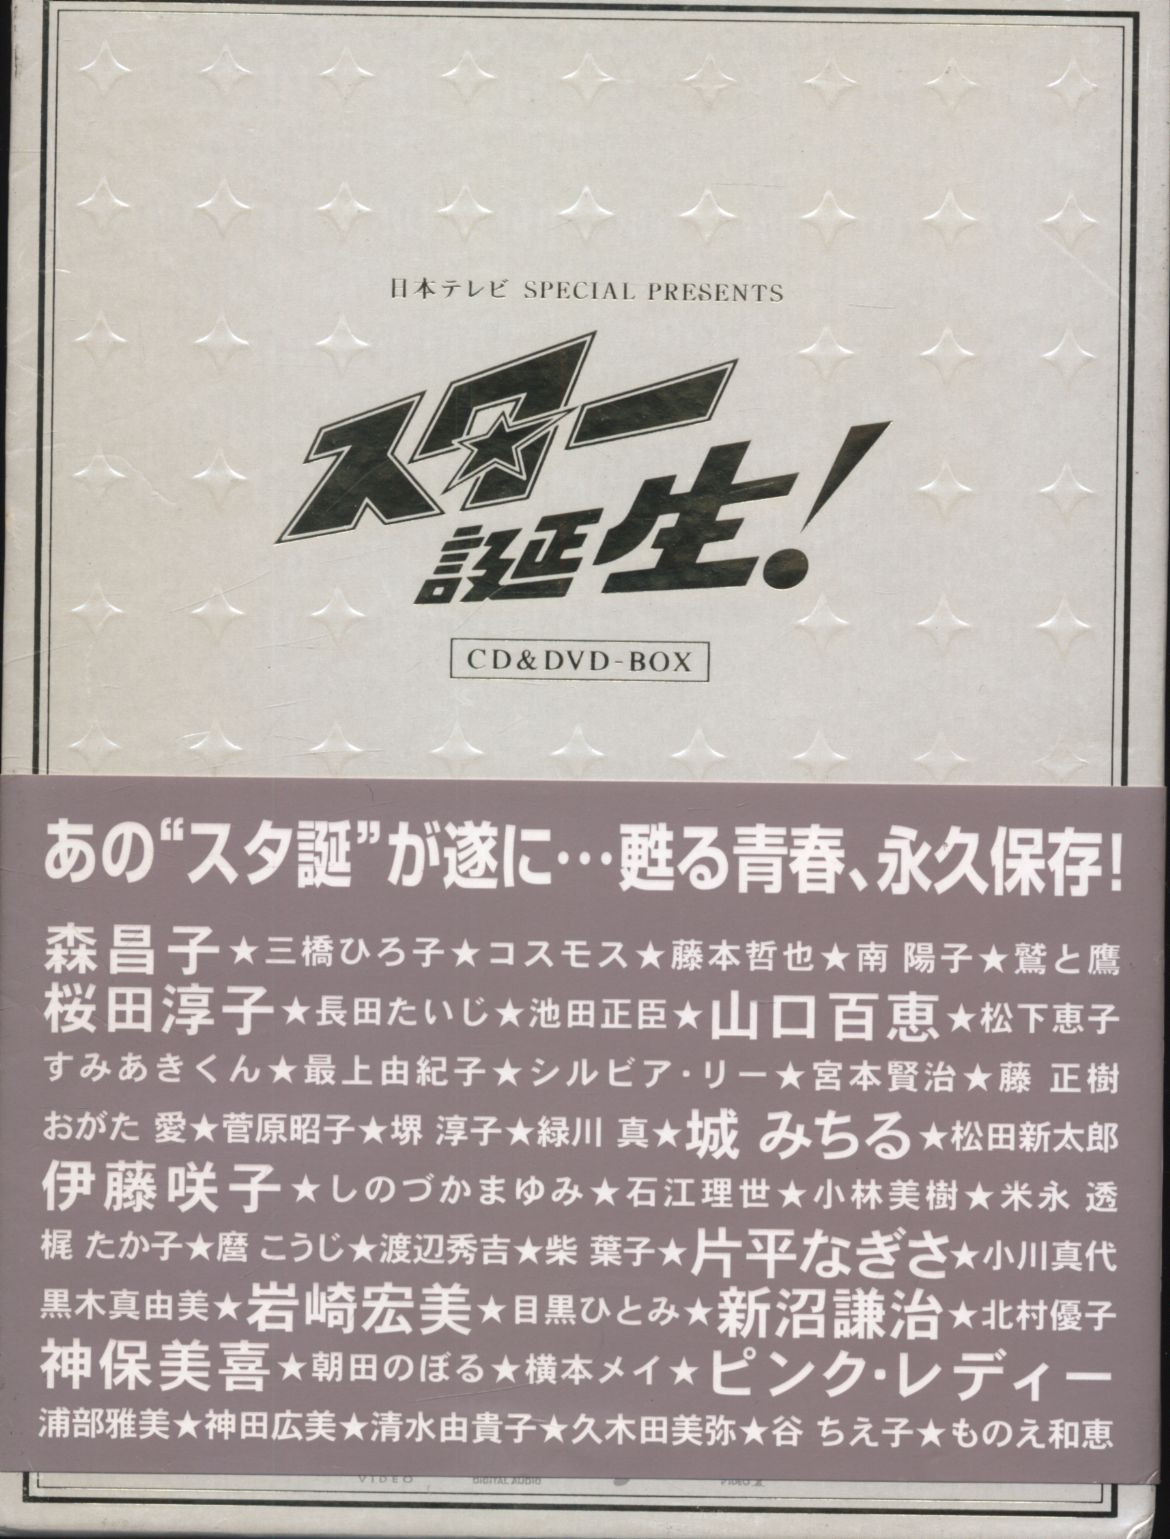 日本テレビ SPECIAL PRESENTS「スター誕生!」CD&DVD-BOX - アニメ